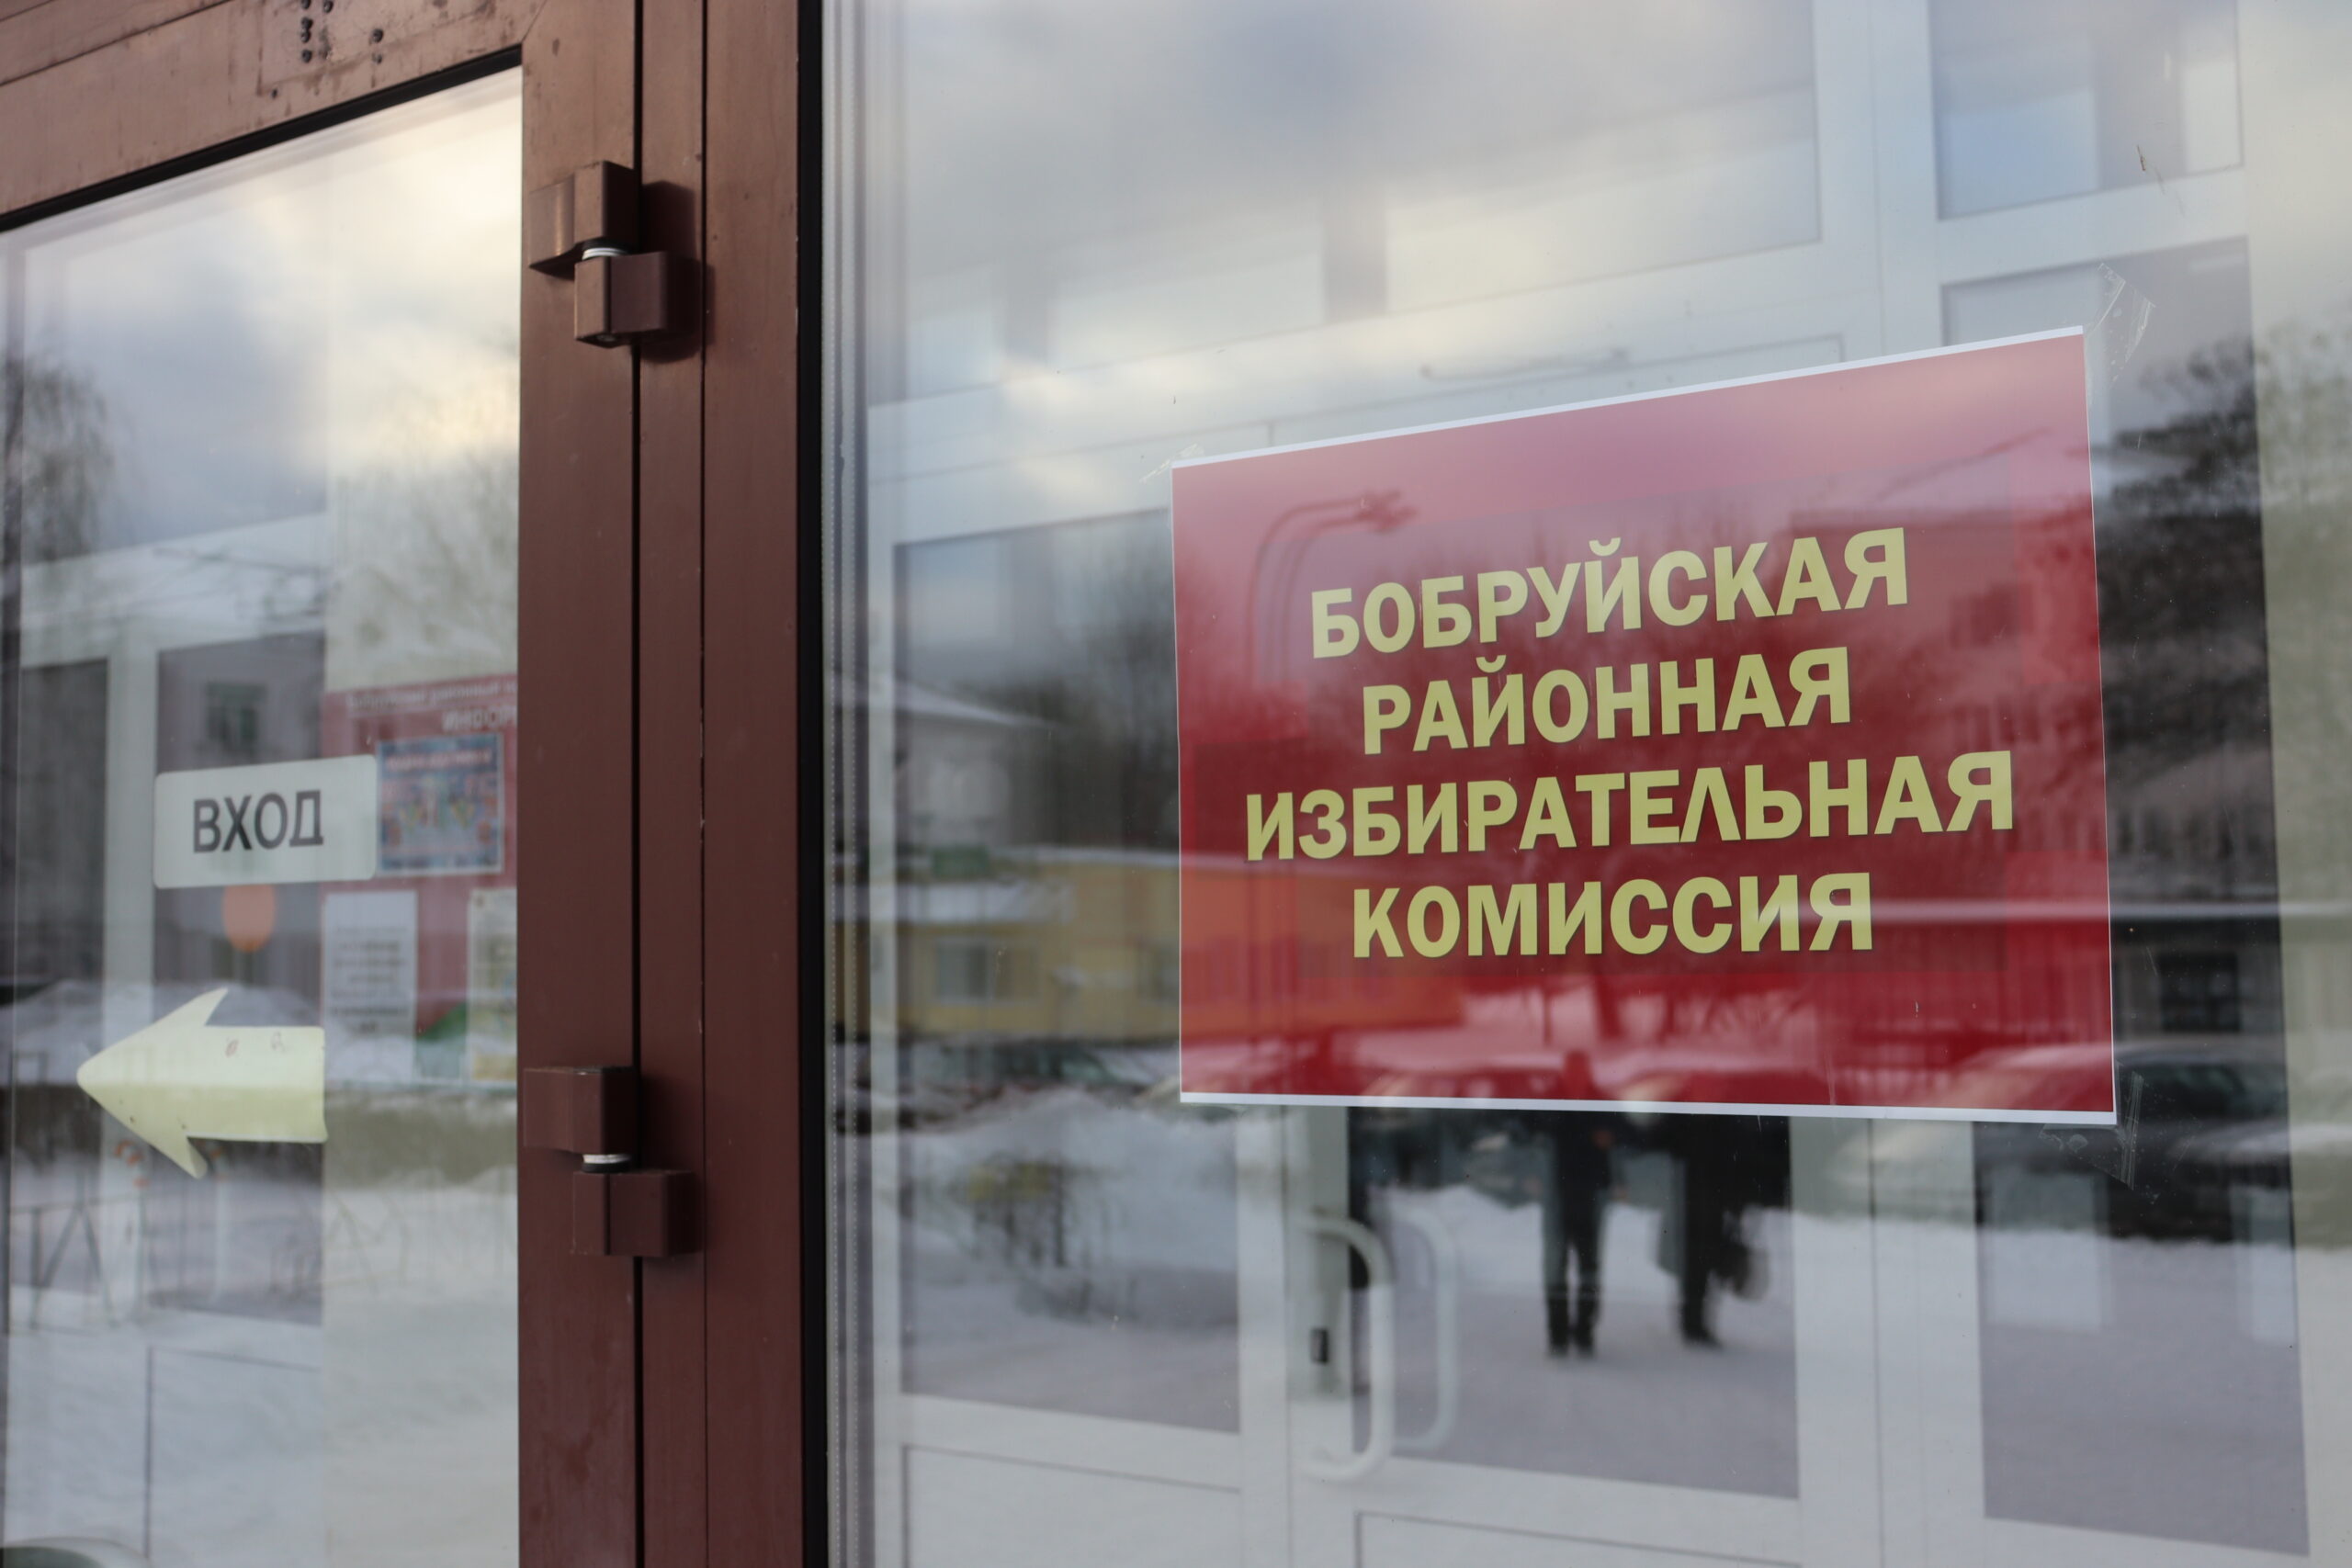 5 января состоится заседание Бобруйской районной избирательной комиссии